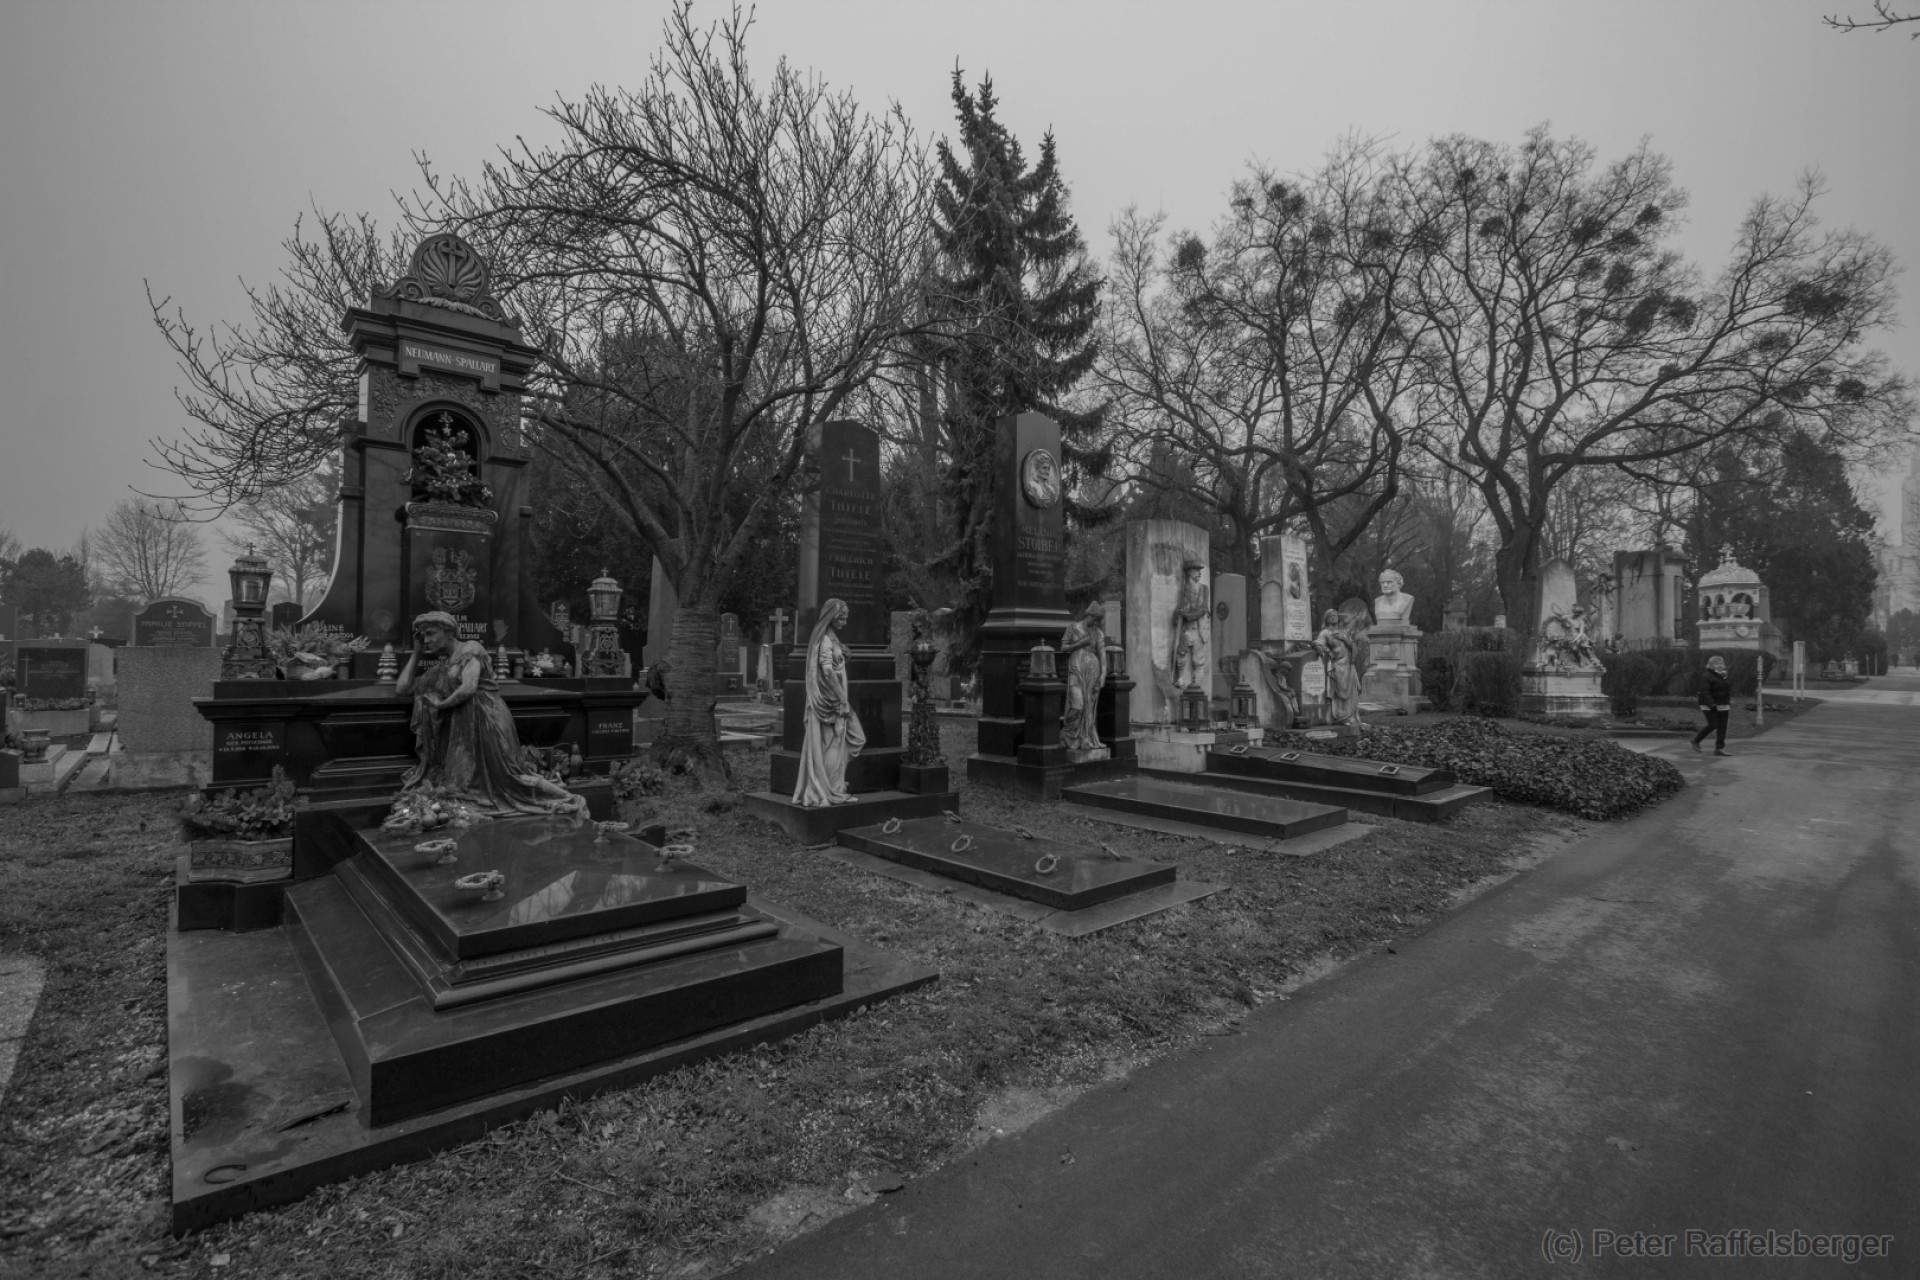 Vienna Central Graveyard